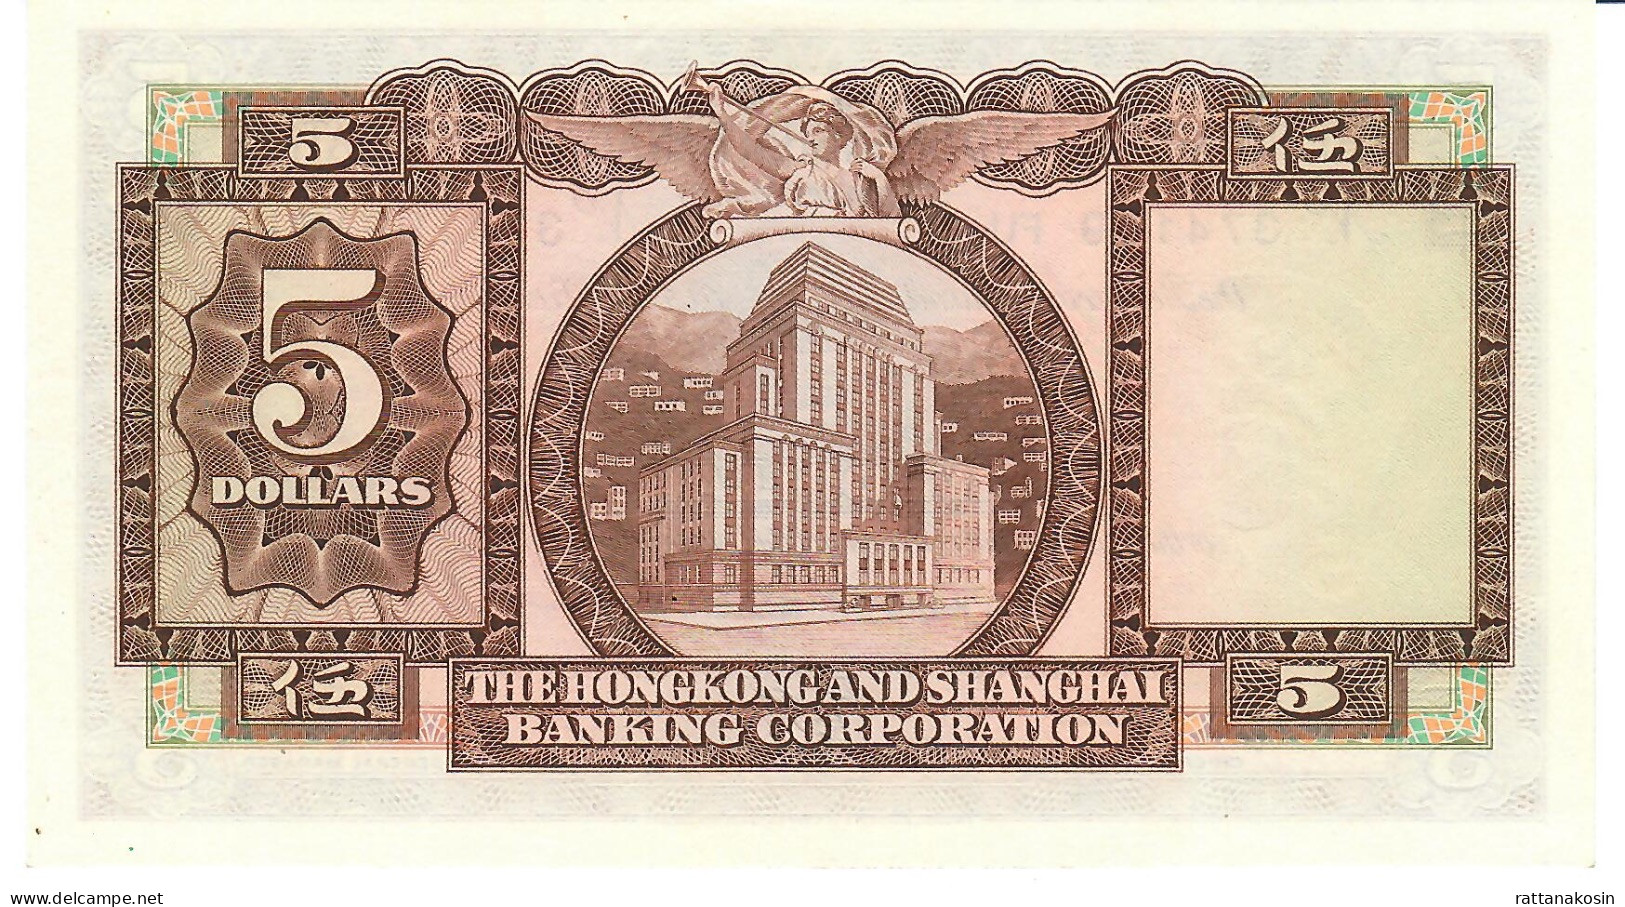 HONGKONG P181f 5 DOLLARS 31.3.1975  HSBC    UNC. - Hong Kong